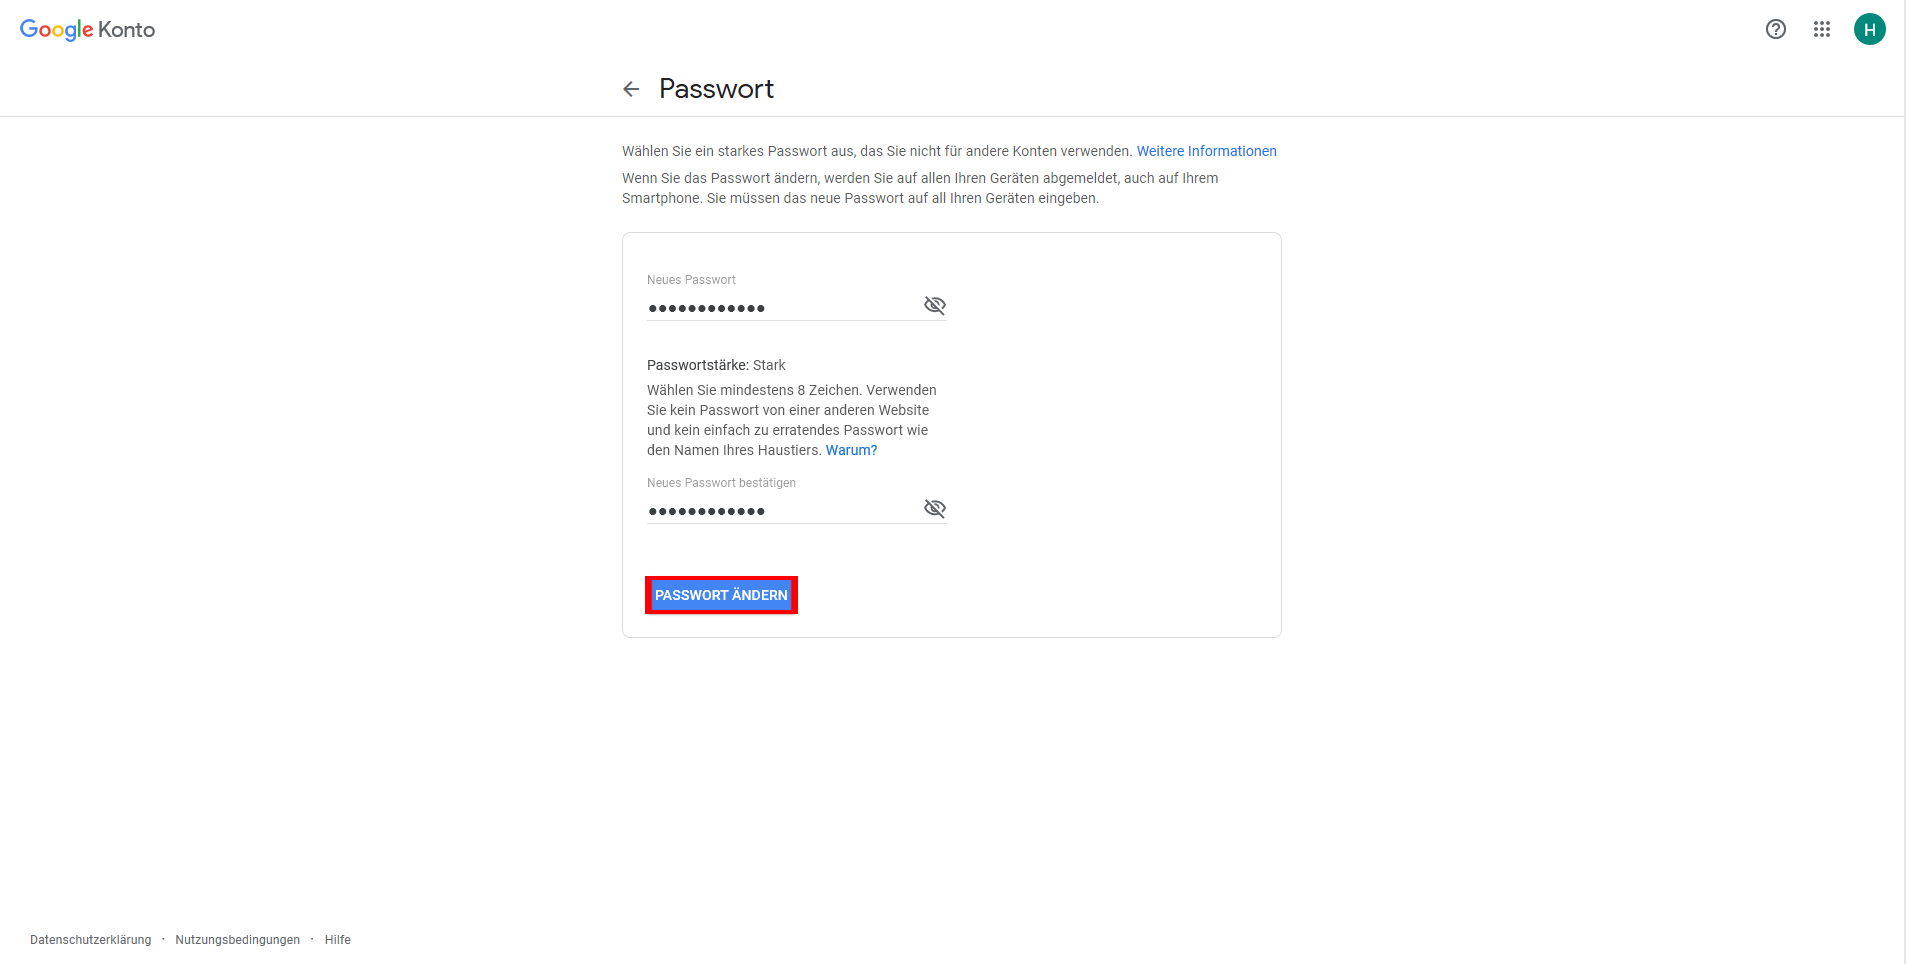 Neues Passwort vergeben - achten Sie auf die Passwortstärke